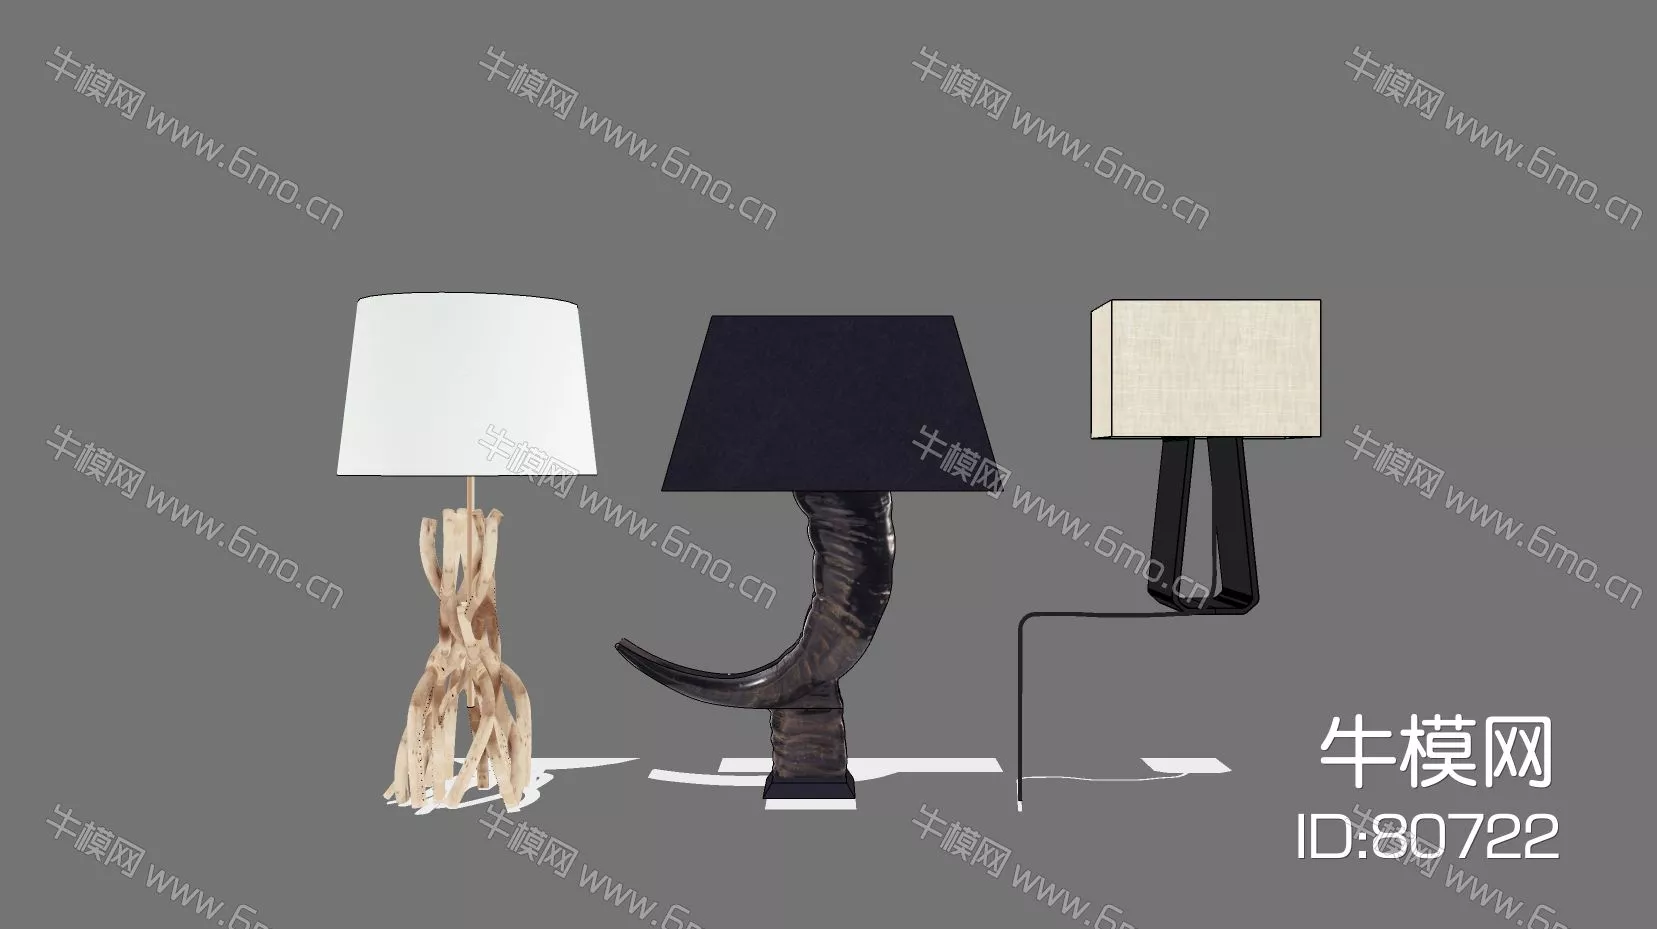 MODERN TABLE LAMP - SKETCHUP 3D MODEL - ENSCAPE - 80722